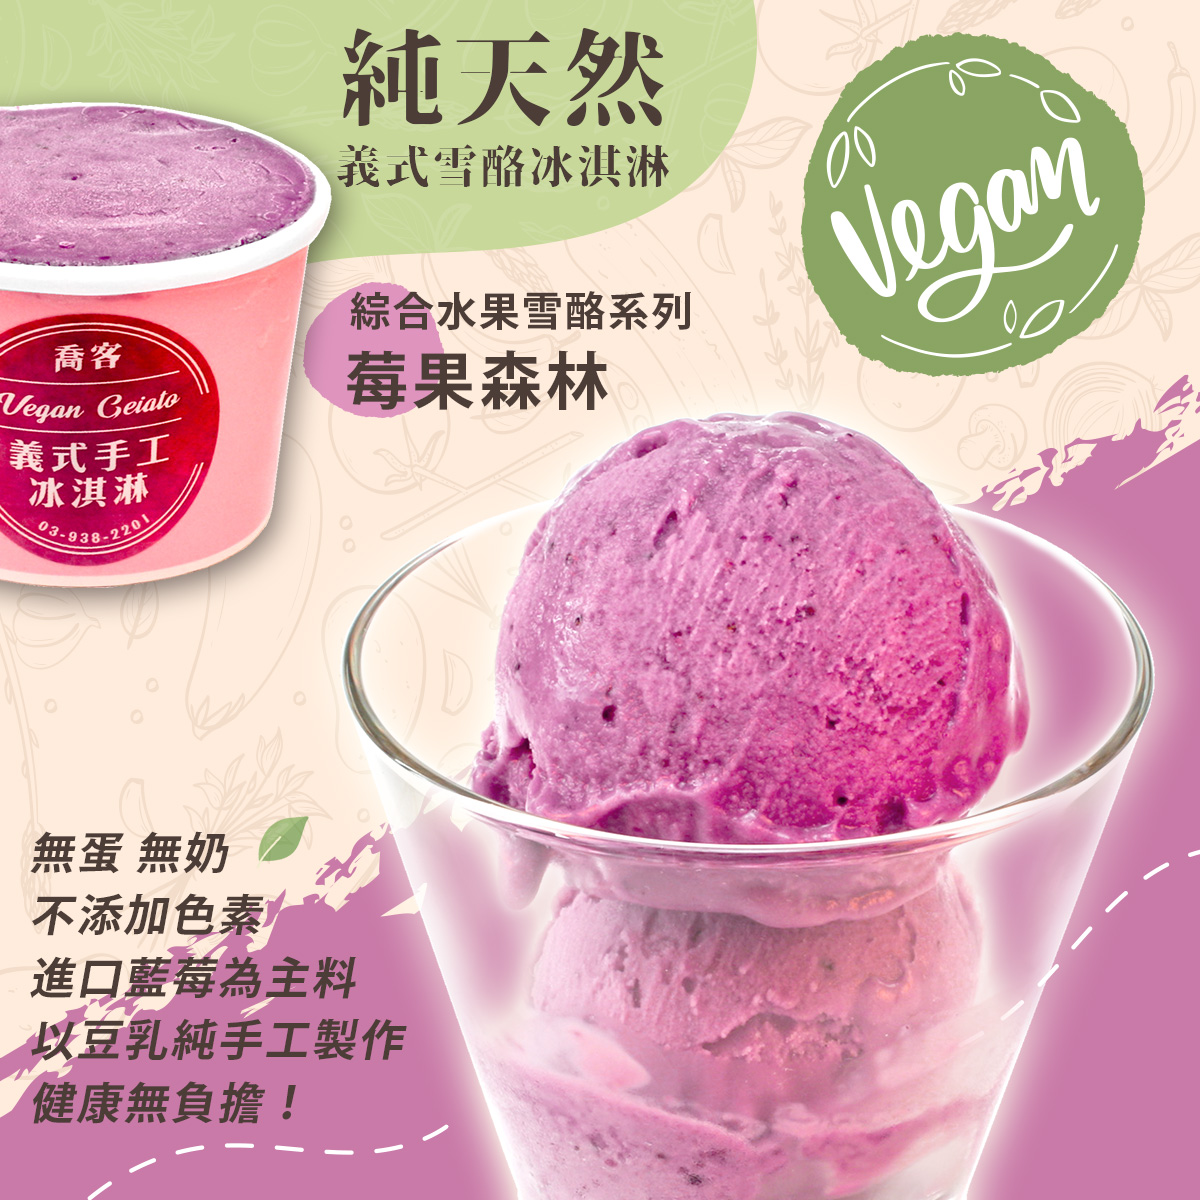 【喬客】綜合水果雪酪系列-莓果森林 冰淇淋